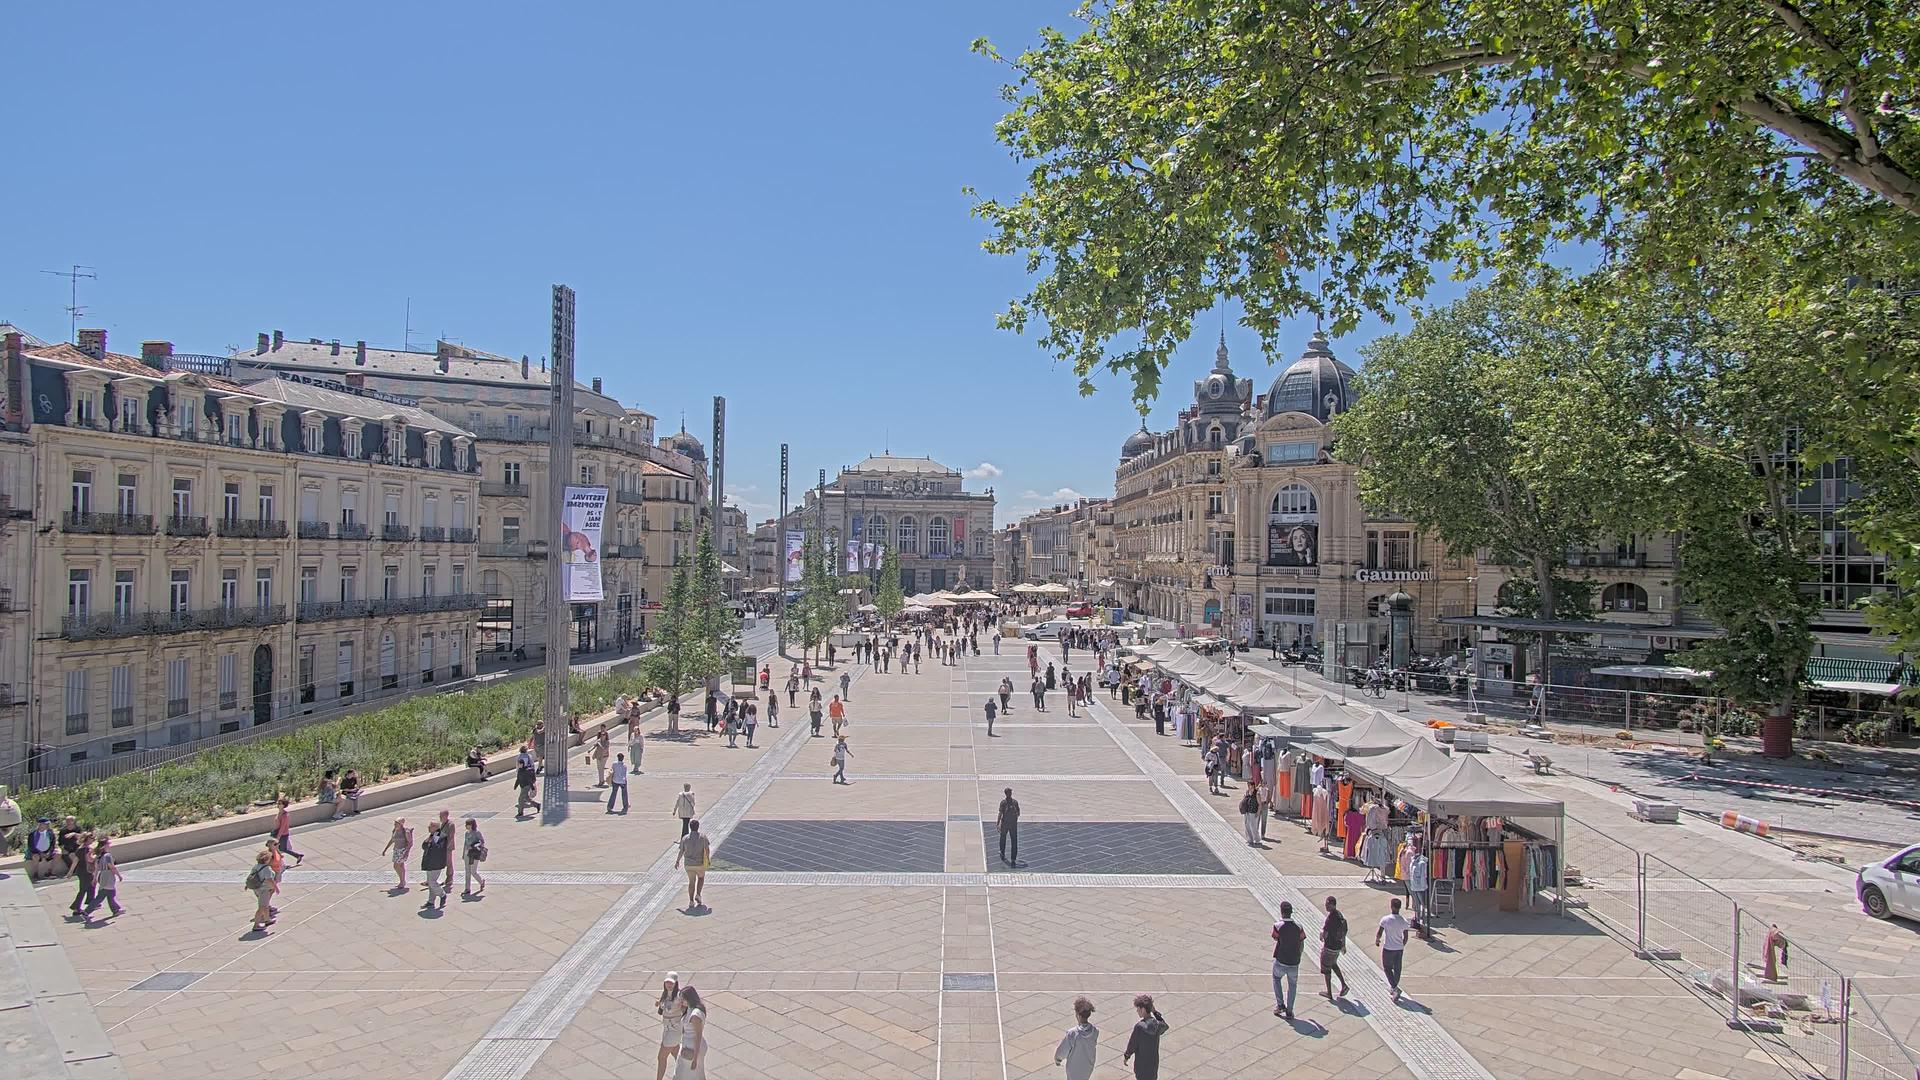 Montpellier: Place de la Comédie